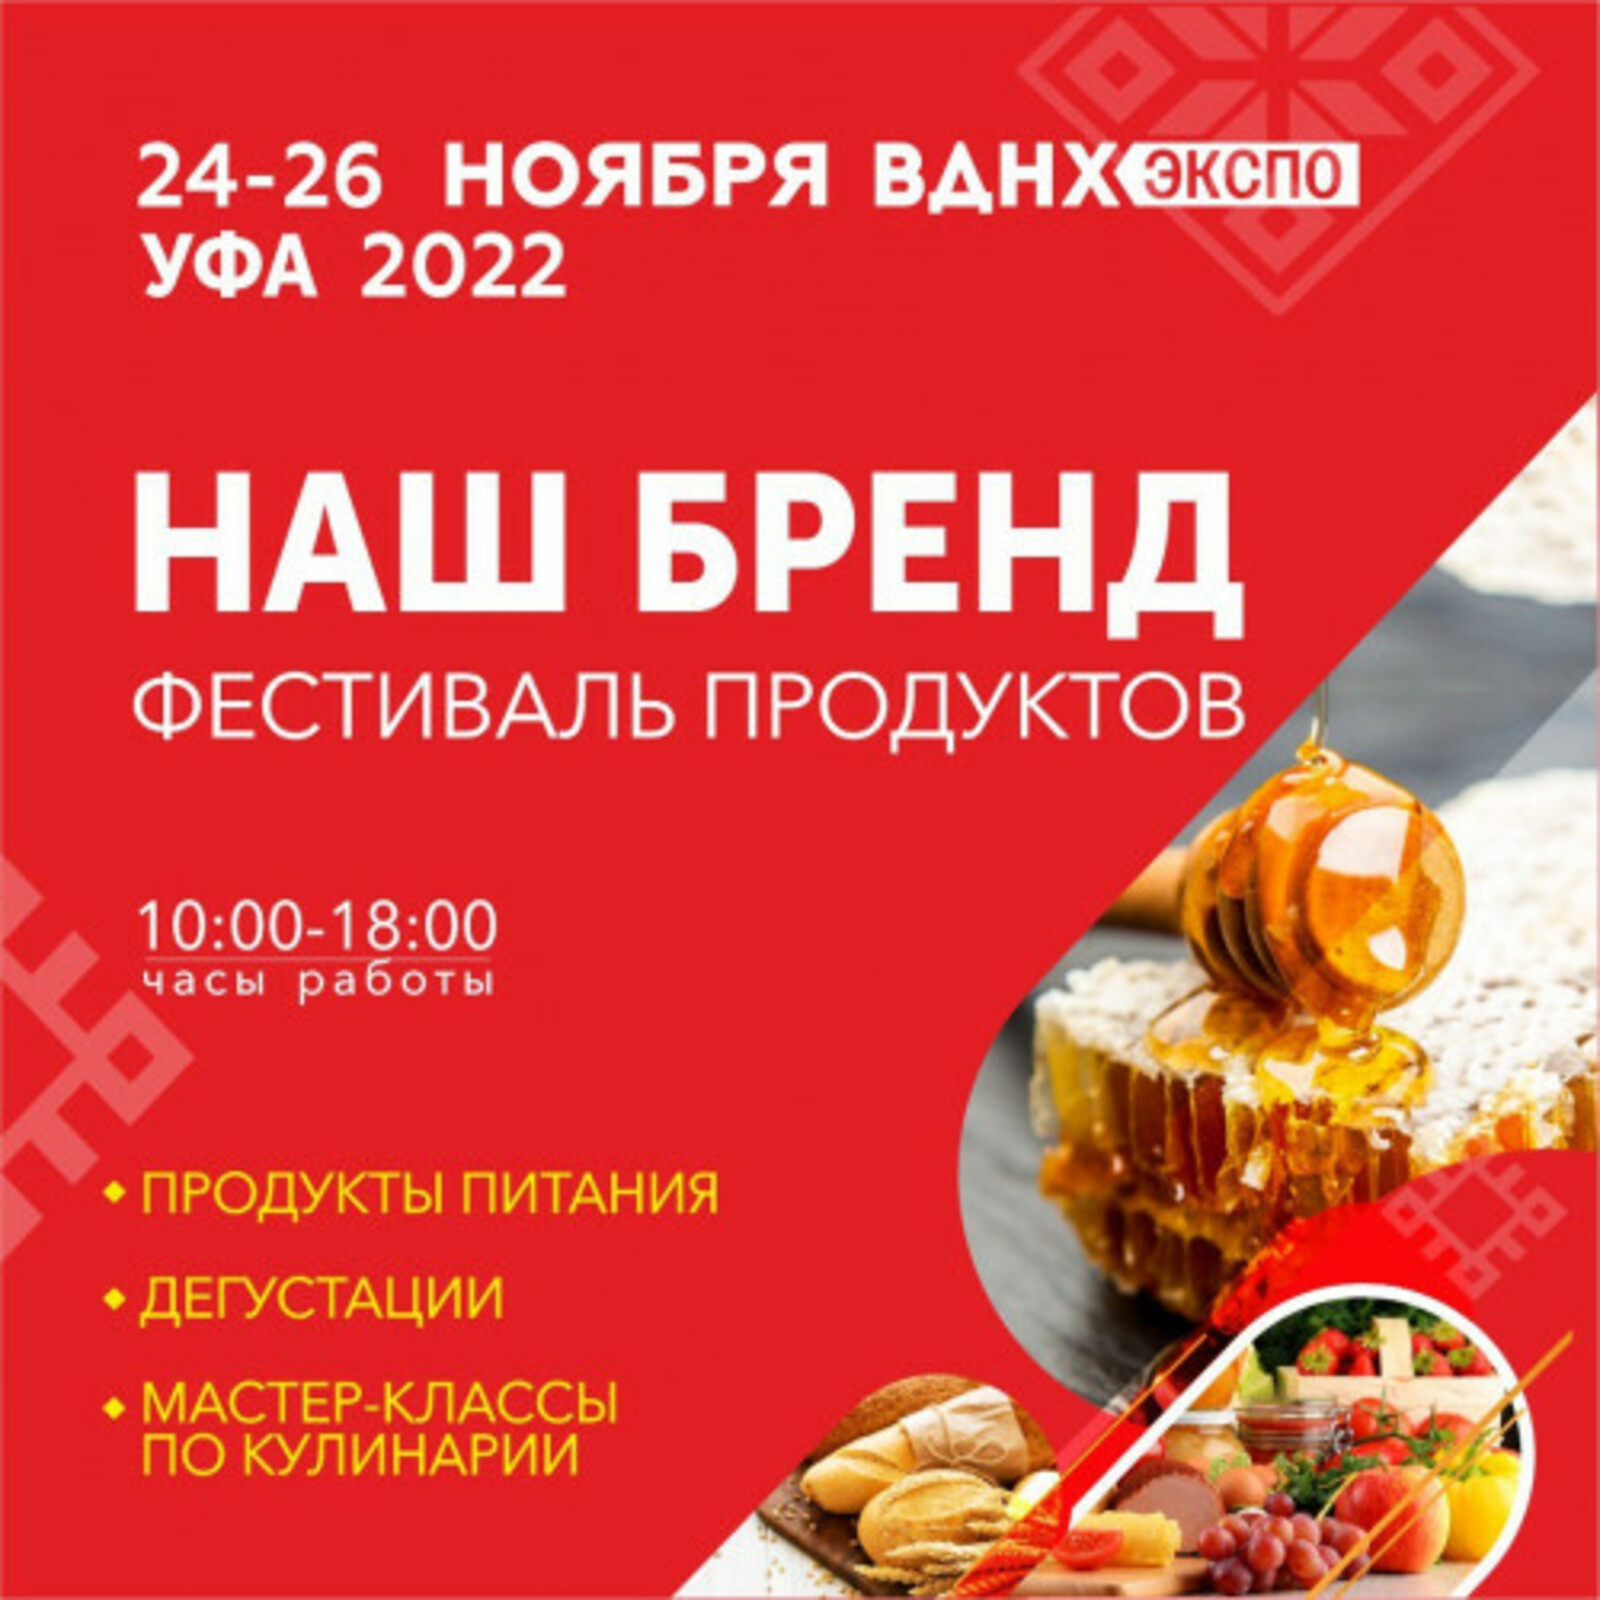 В Башкортостане пройдет VI специализированная выставка «Наш Бренд»